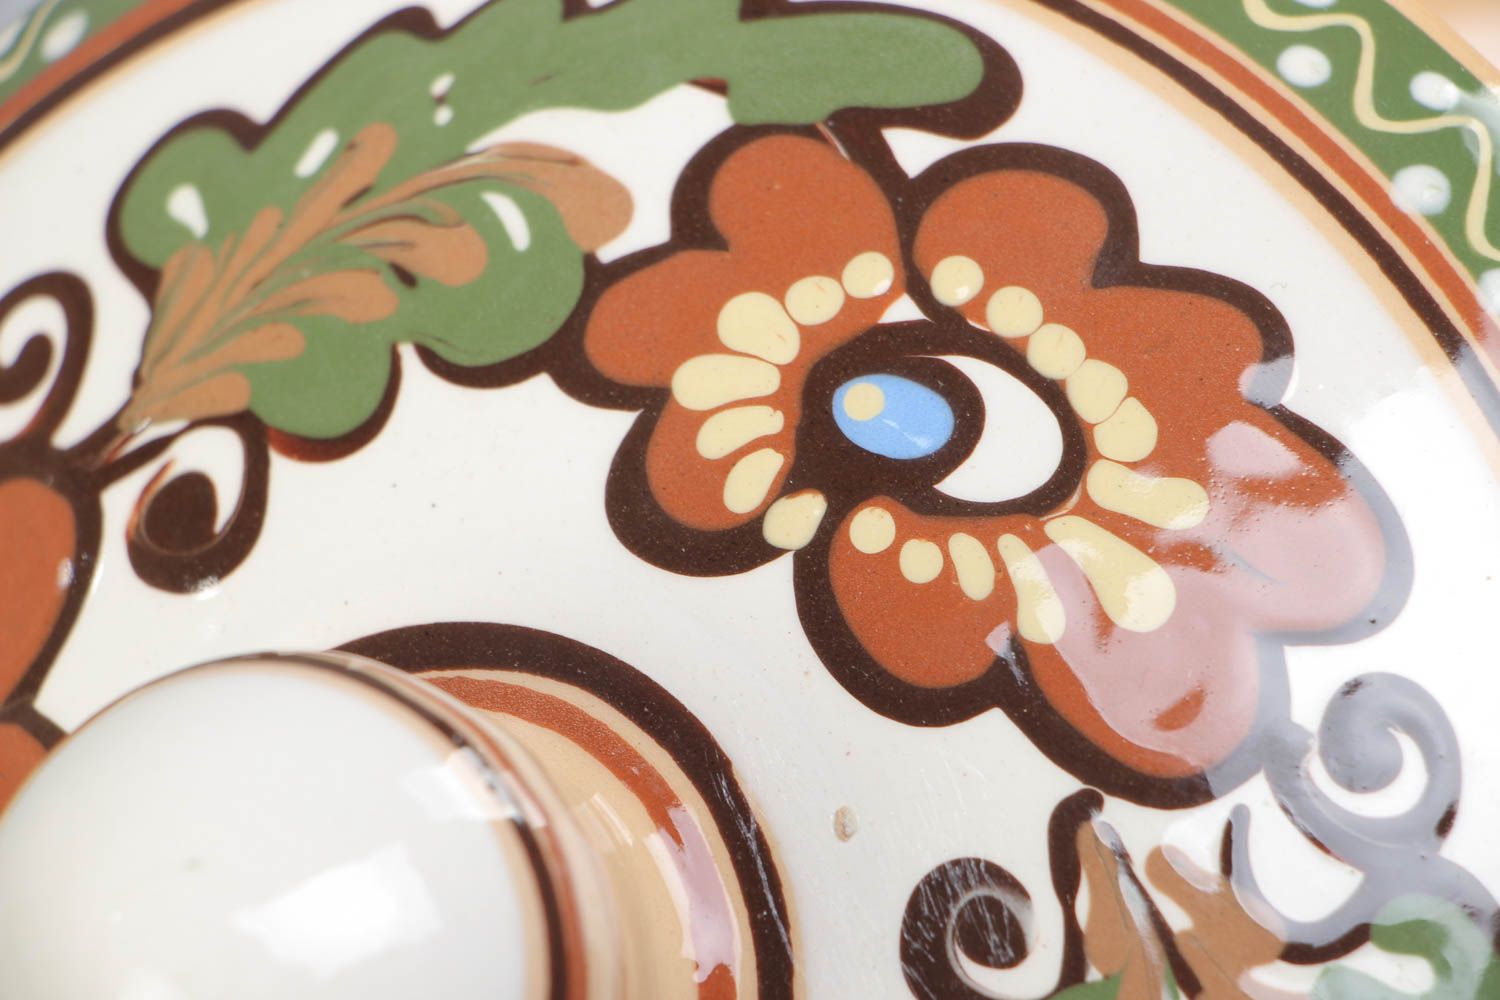 Глиняная супница с крышкой расписанная глазурью керамическая посуда ручной работы фото 3